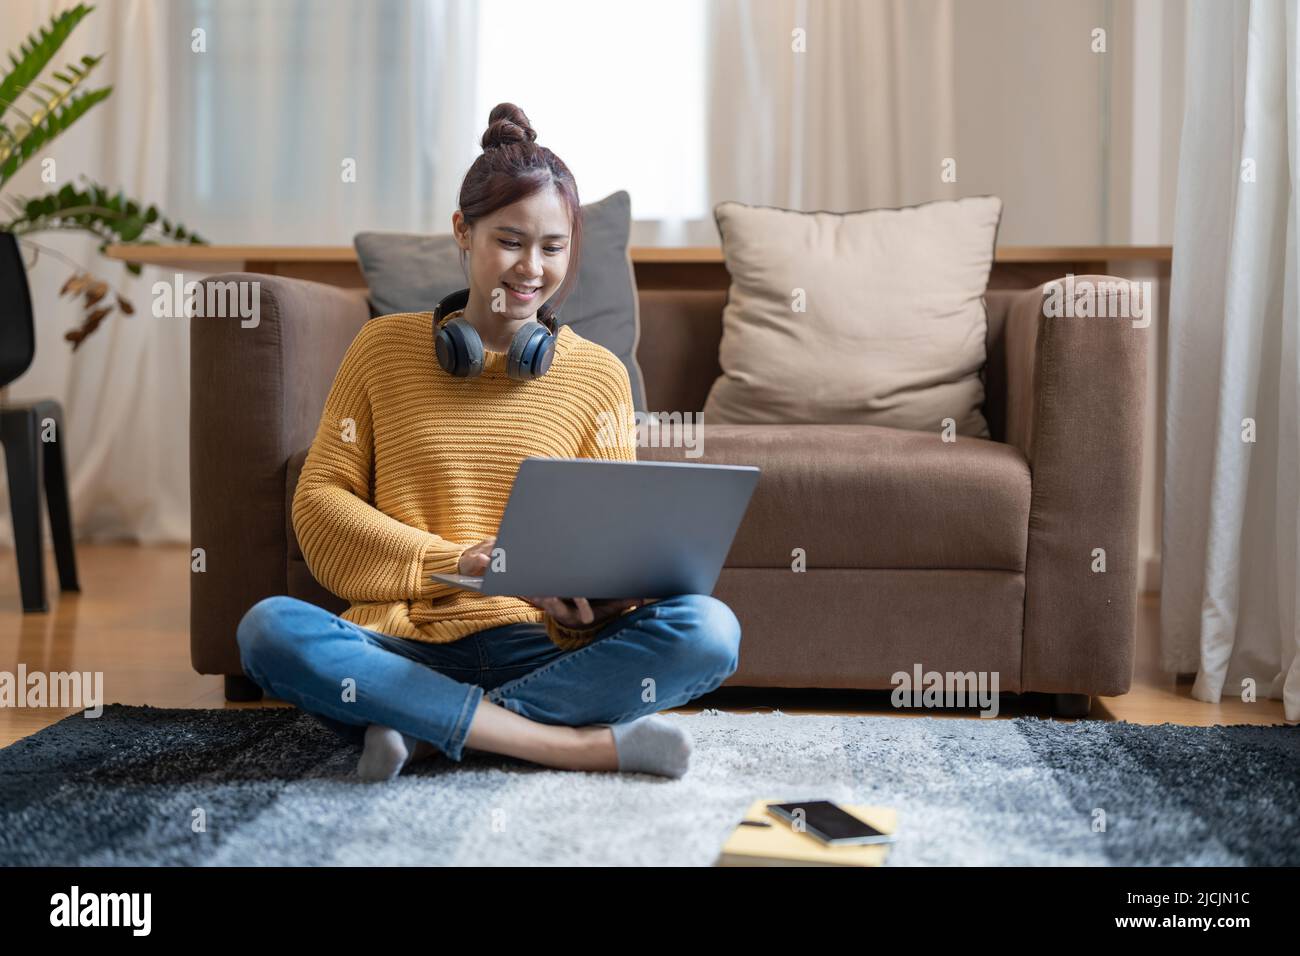 Giovane donna asiatica vestita casualmente lavorando su un computer portatile mentre si siede sul pavimento a casa. Lavorate da casa in un'atmosfera accogliente Foto Stock